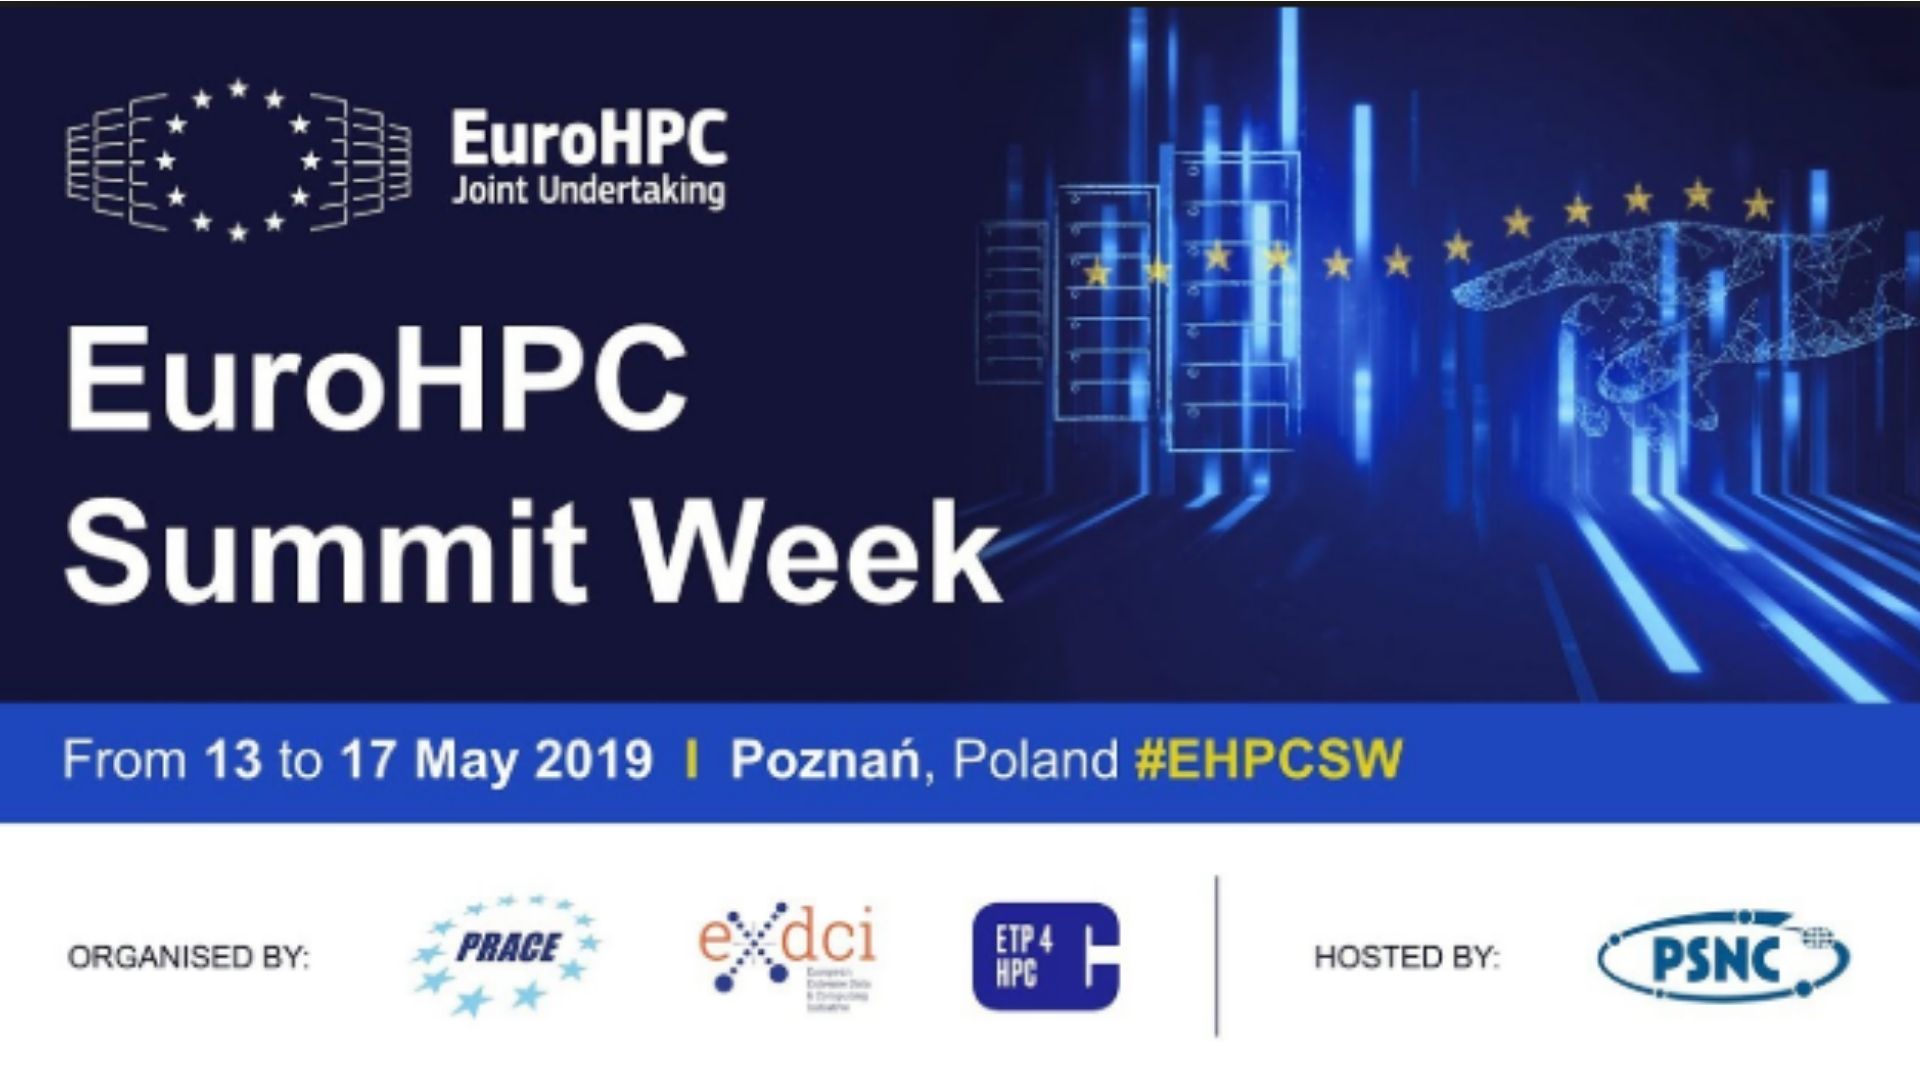 EuroHPC Summit Week 2019